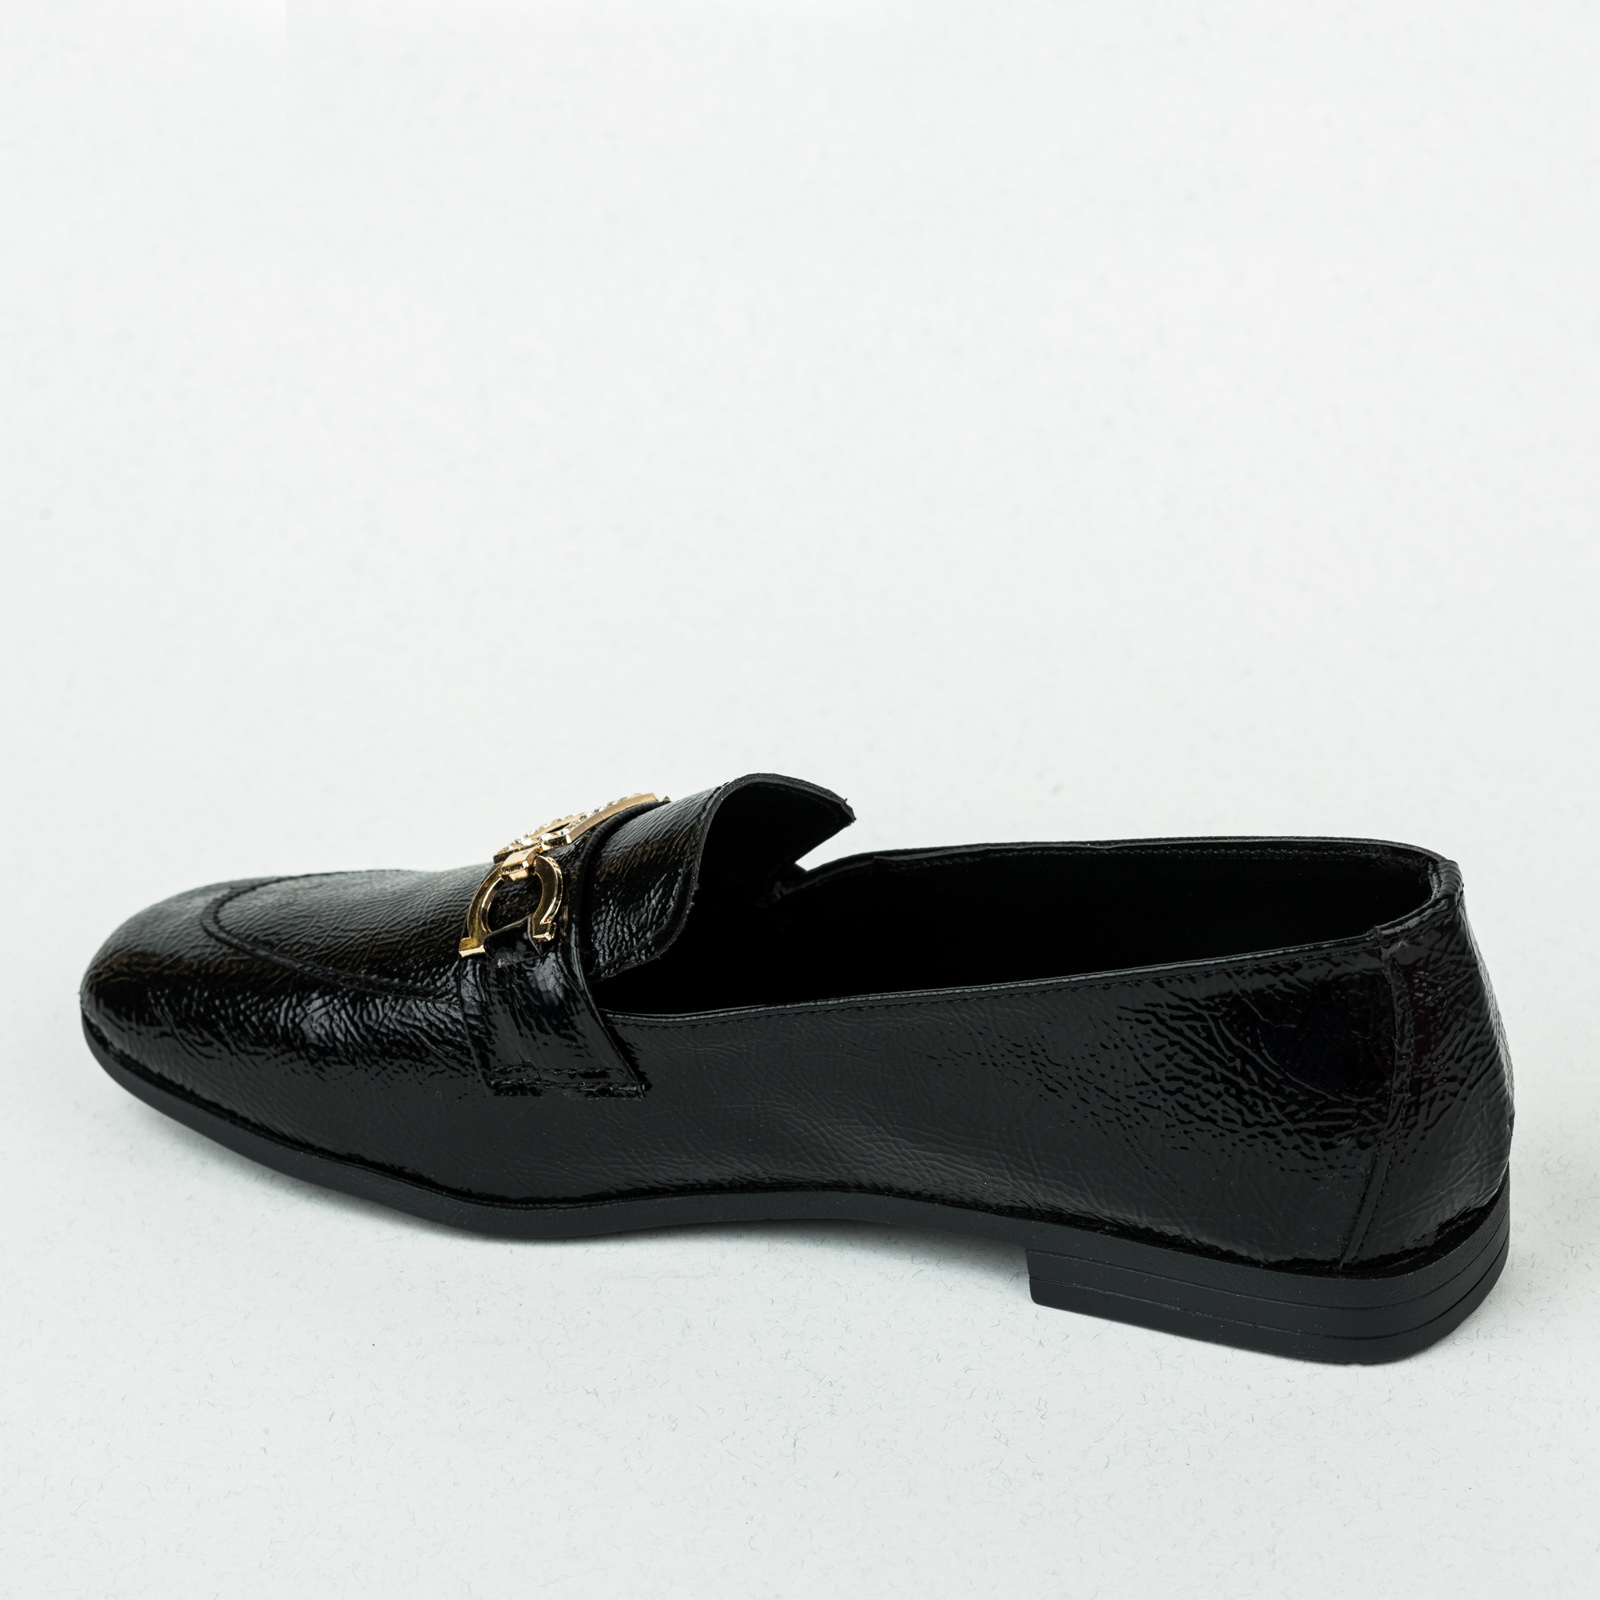 Ženske cipele B009 - CRNA